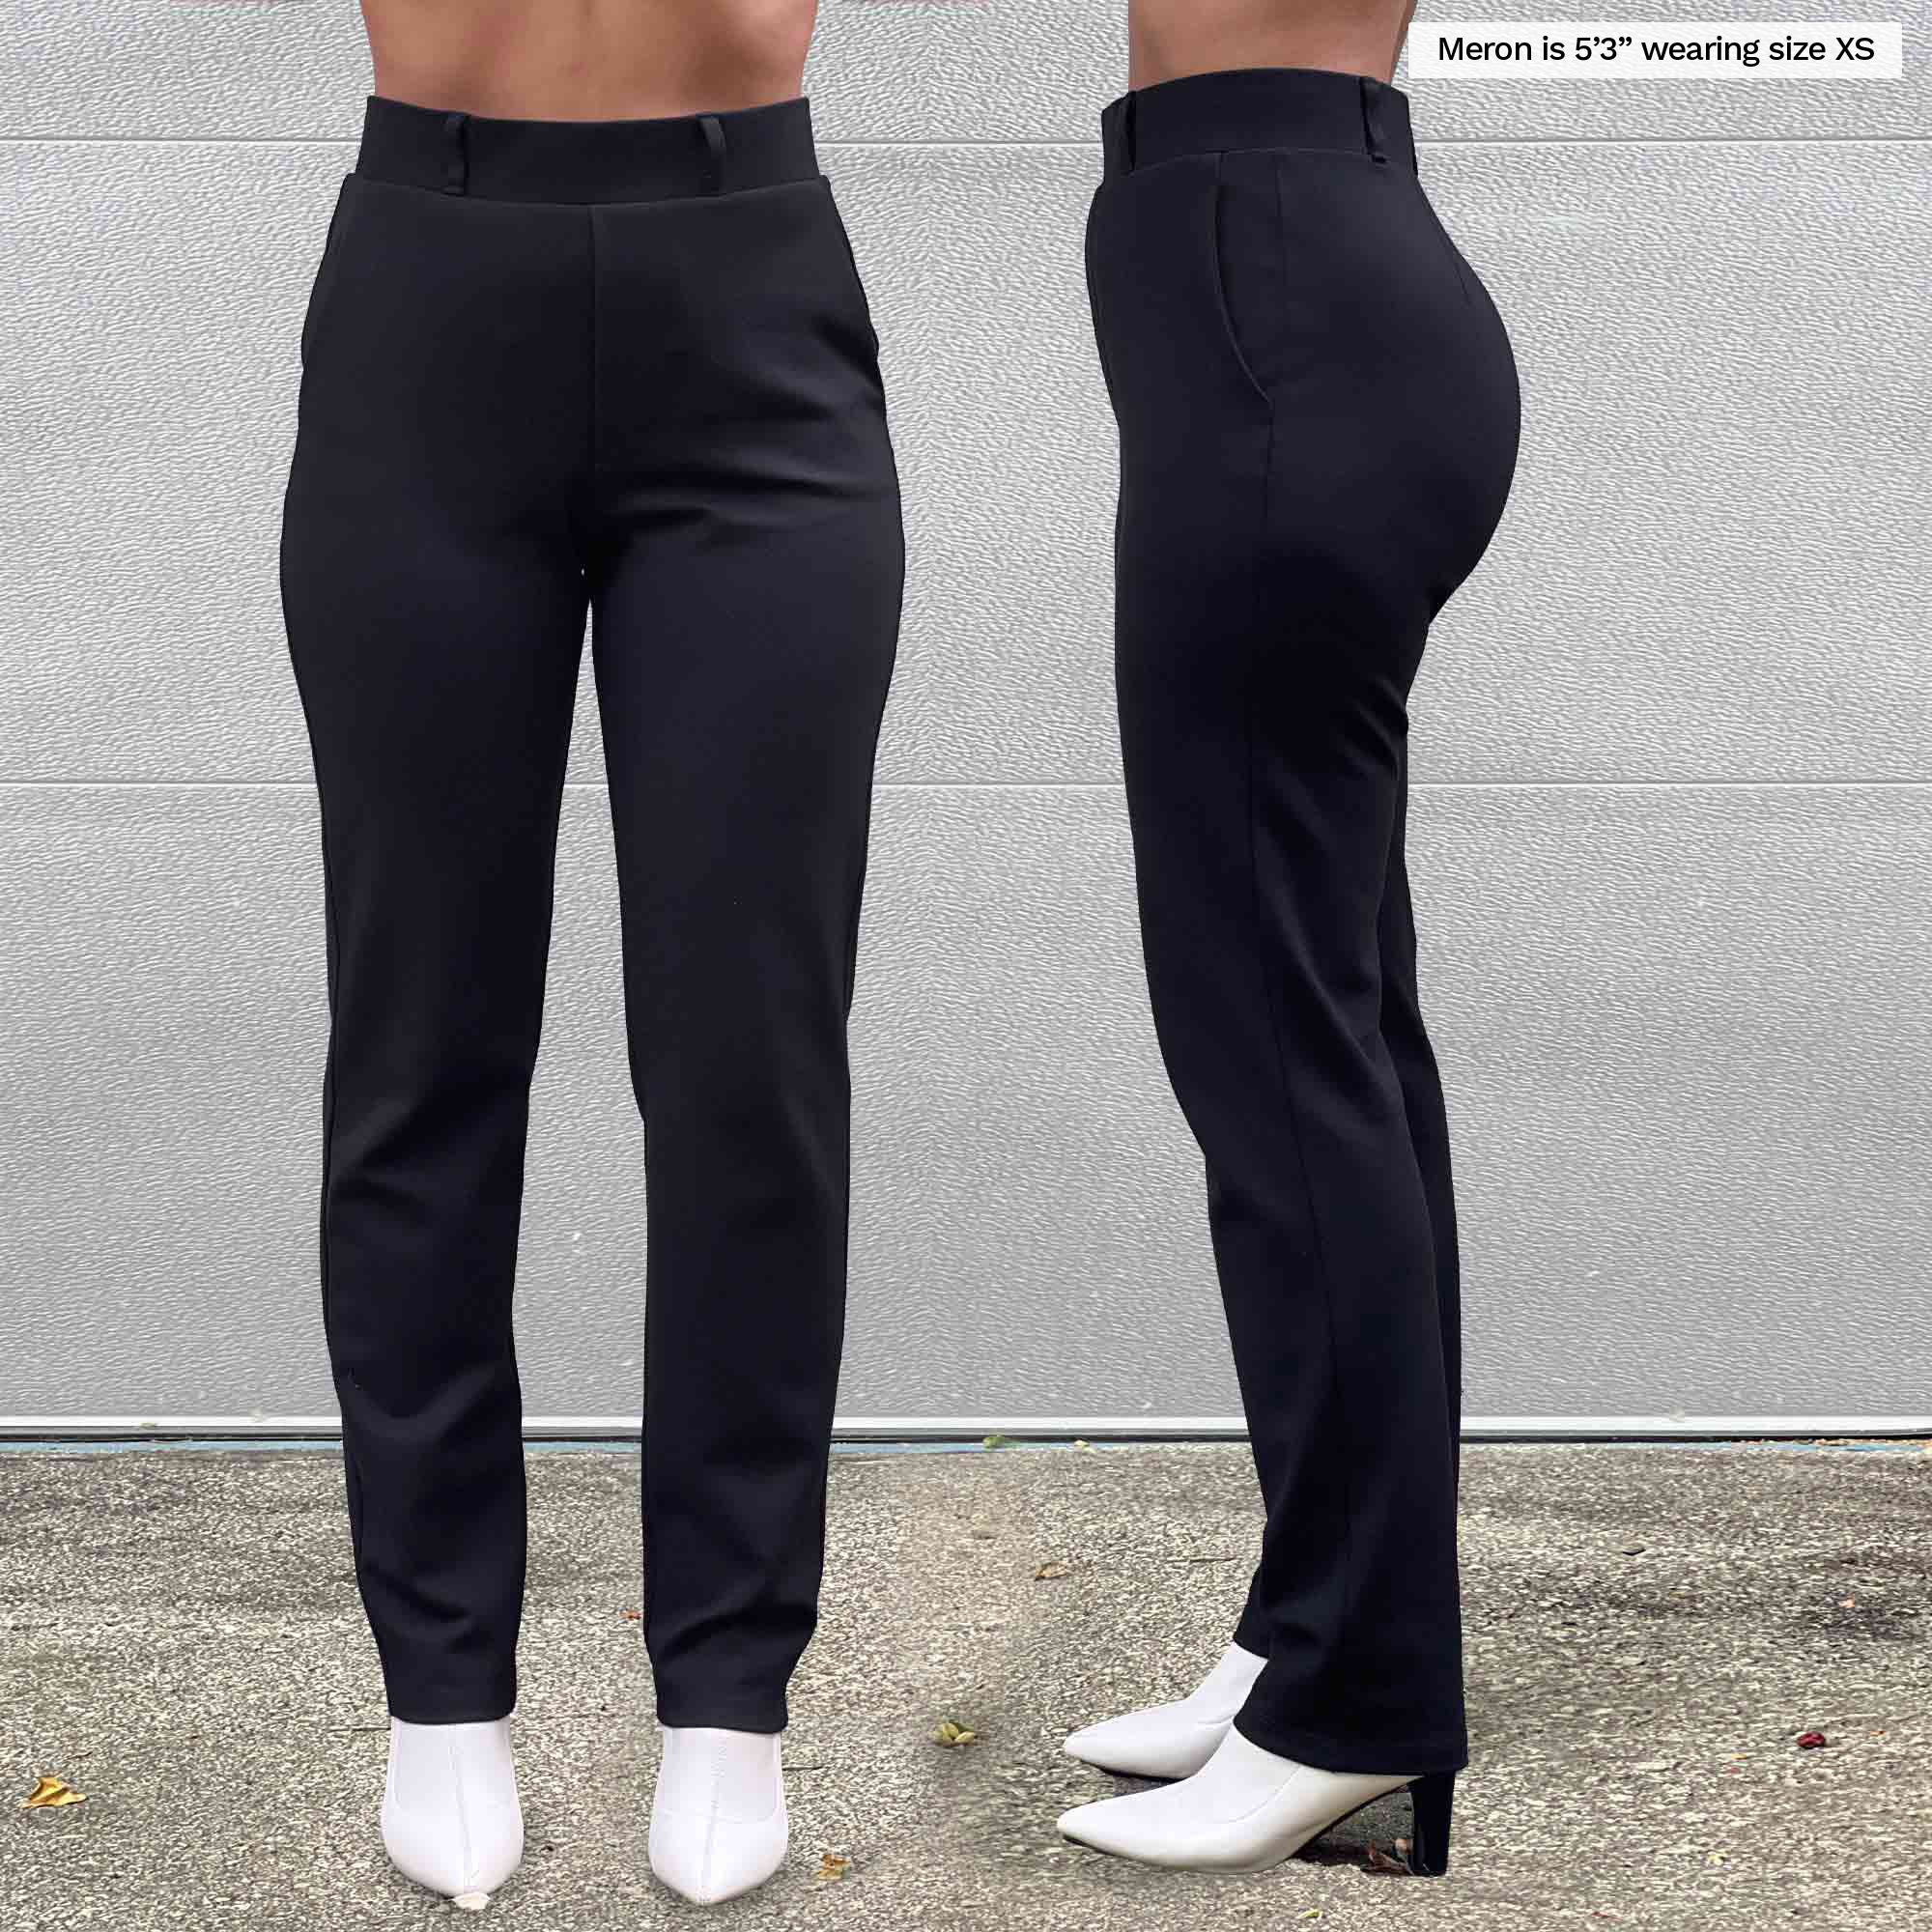 Black Trousers For Women - Pants for Women, Black Slacks & Work Pants